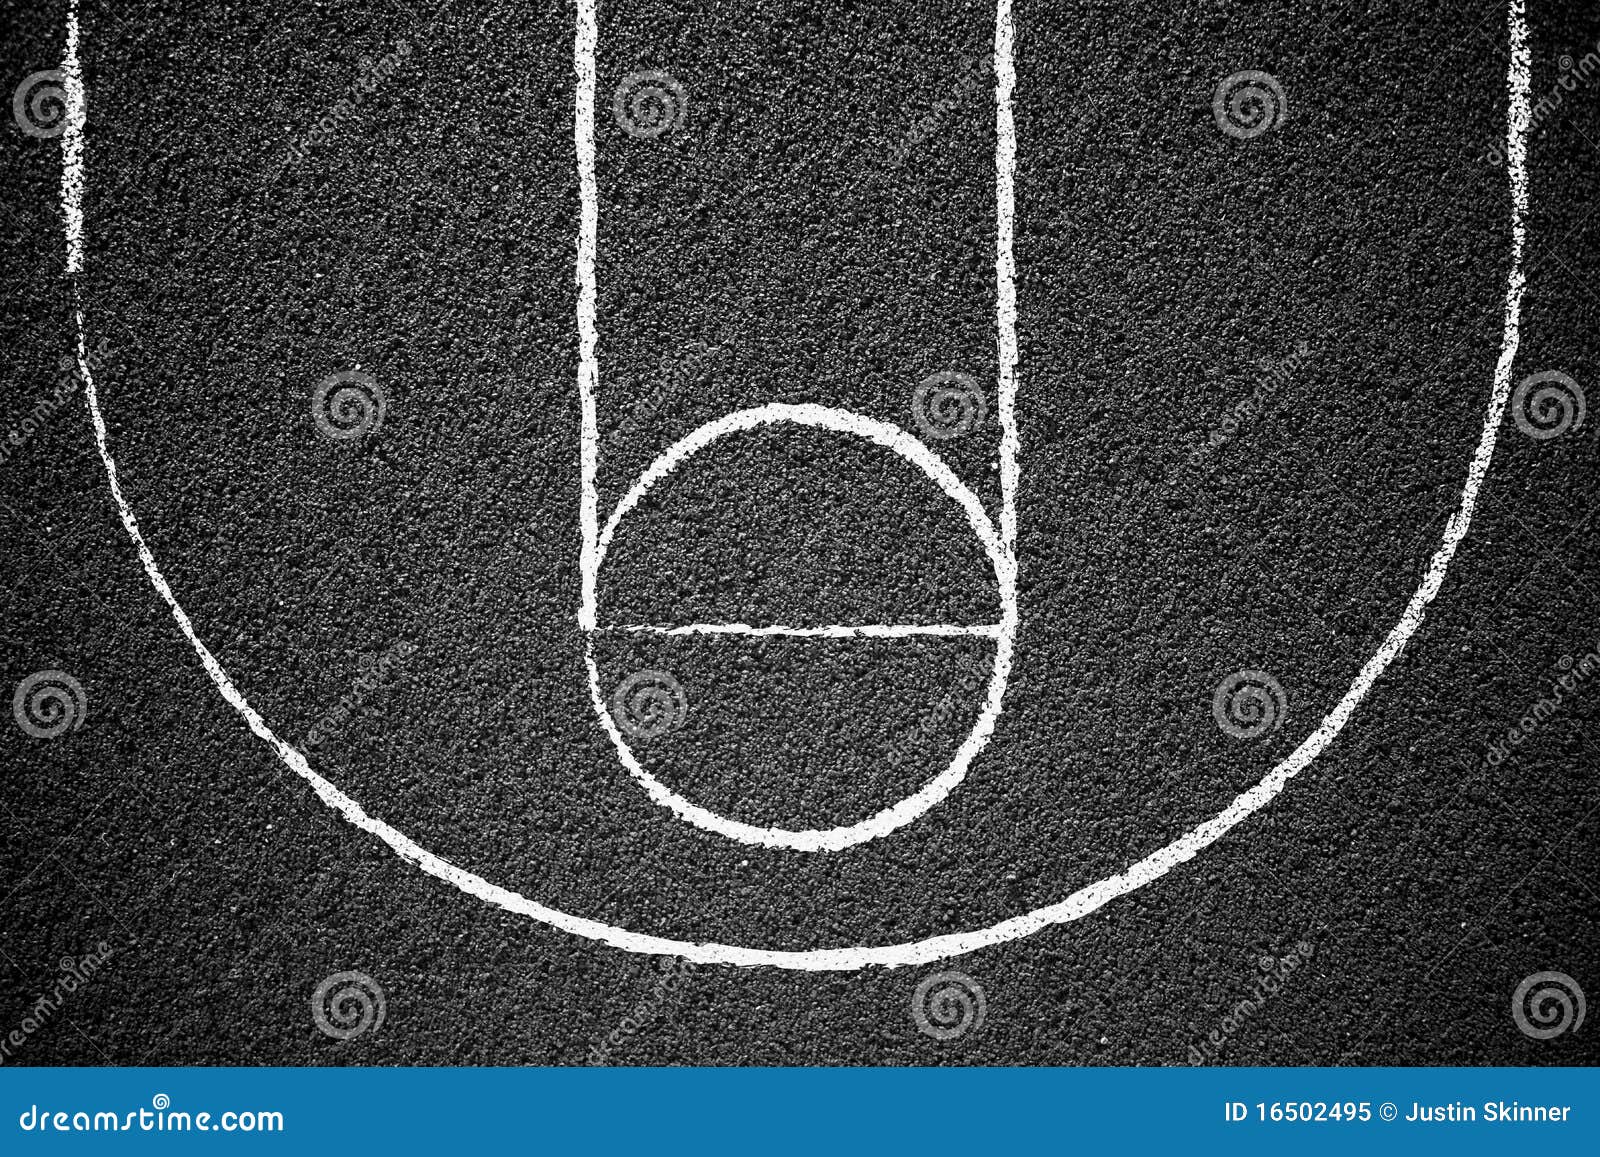 street basketball court